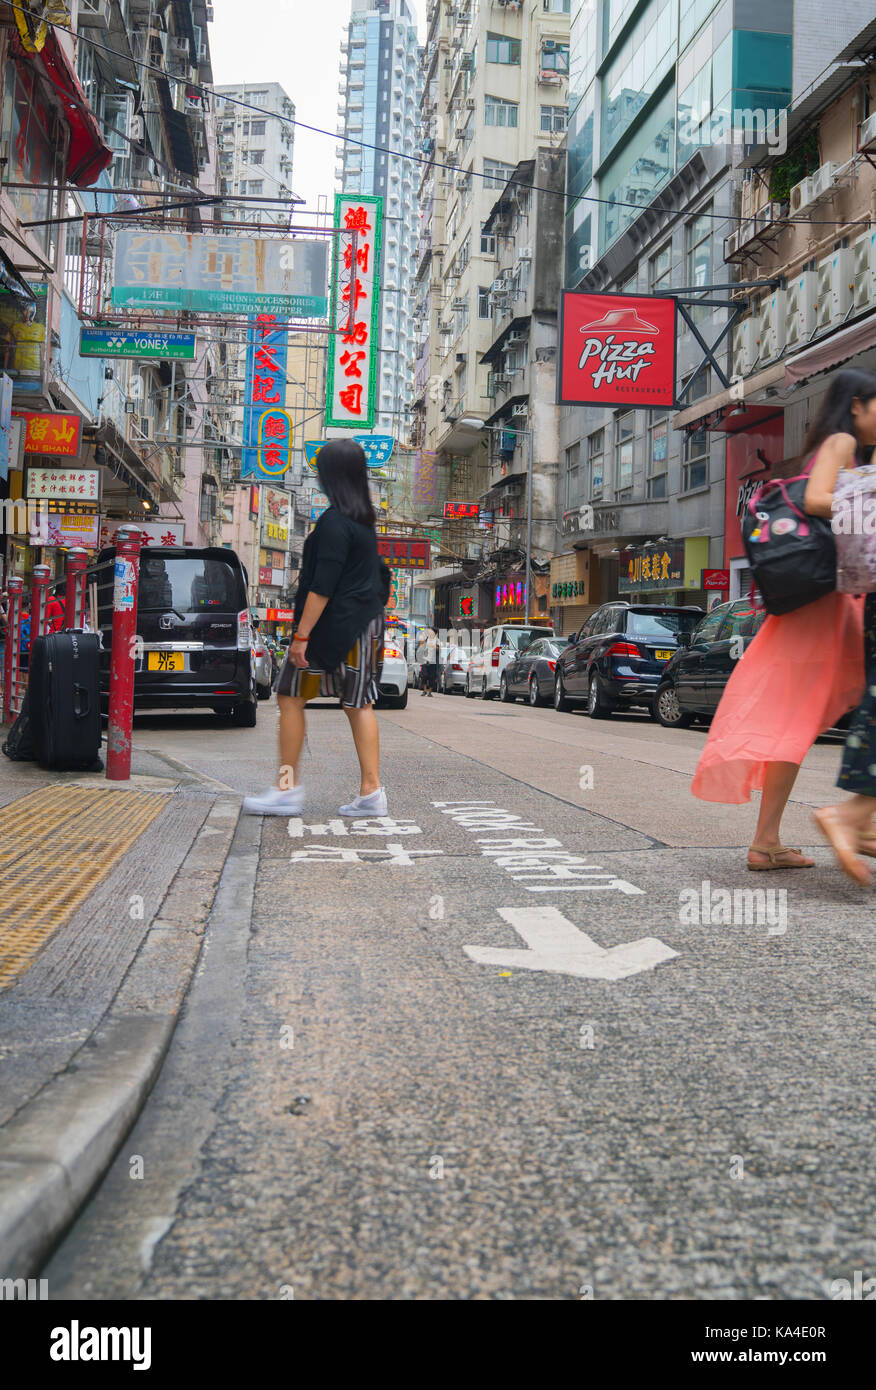 Hong kong, asia - agosto 2, 2017; persone cross street in scena tipicamente asiatico con pletora insegne al neon di hong kong Foto Stock